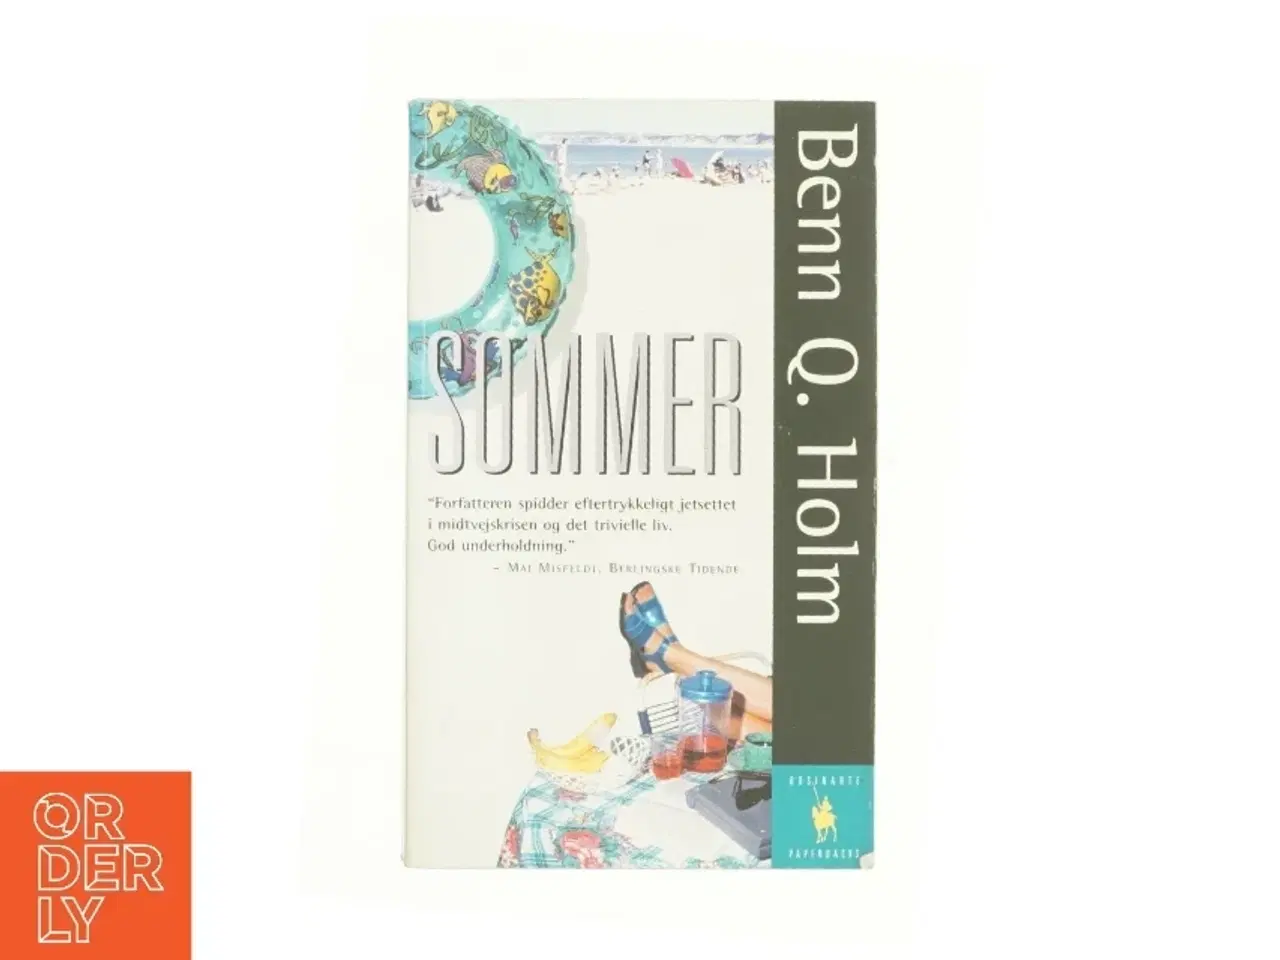 Billede 1 - Sommer : roman af Benn Q. Holm (f. 1962) (Bog)